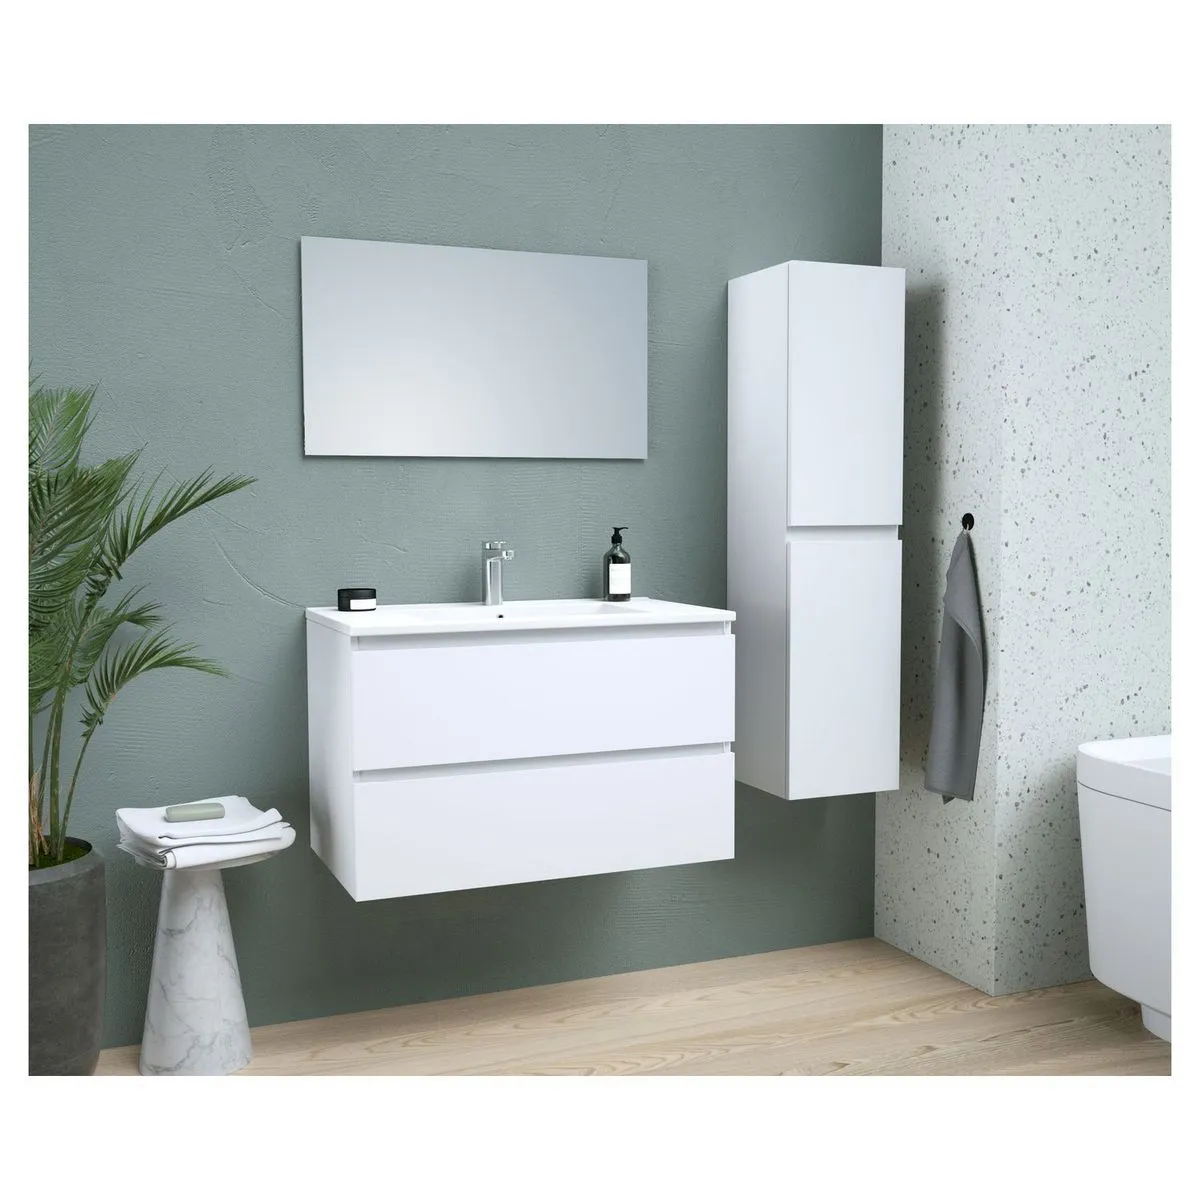  ensemble meuble de salle de bain 2 tiroirs + vasque encastrée + miroir l80 cm odyssee